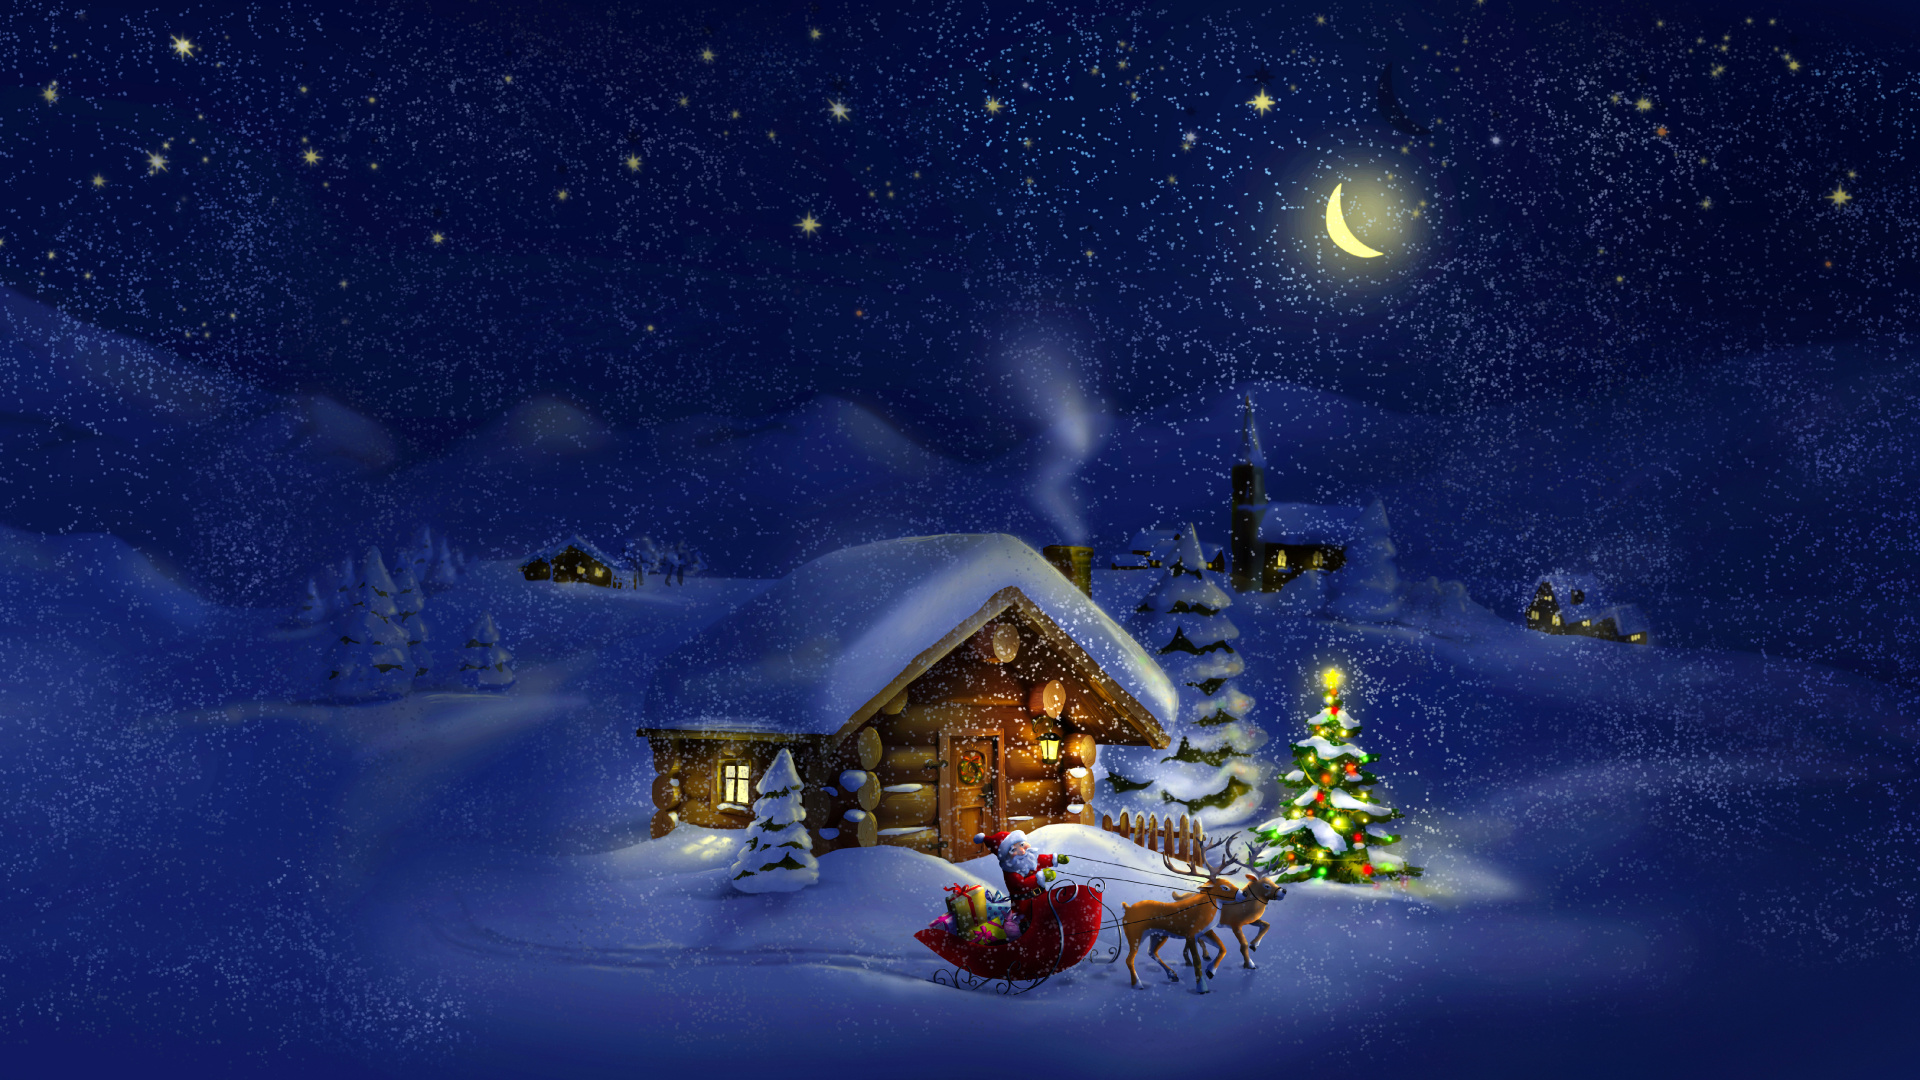 Le Jour De Noël, Santa Claus, Hiver, Neige, Nuit. Wallpaper in 1920x1080 Resolution